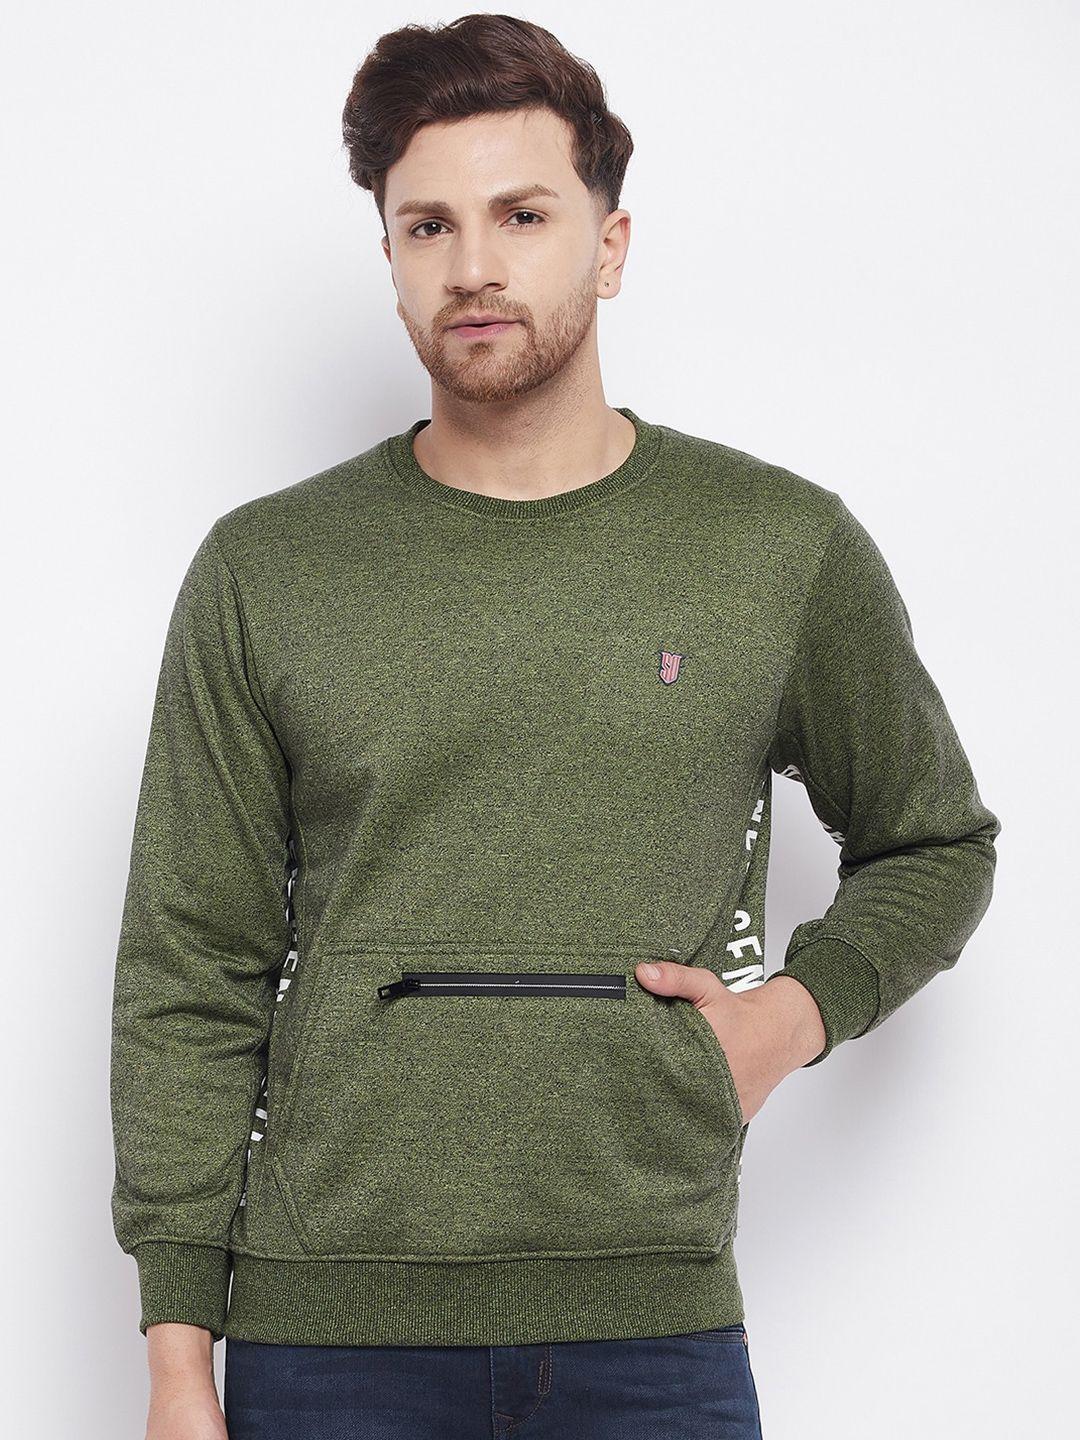 duke-men-green-wool-sweatshirt